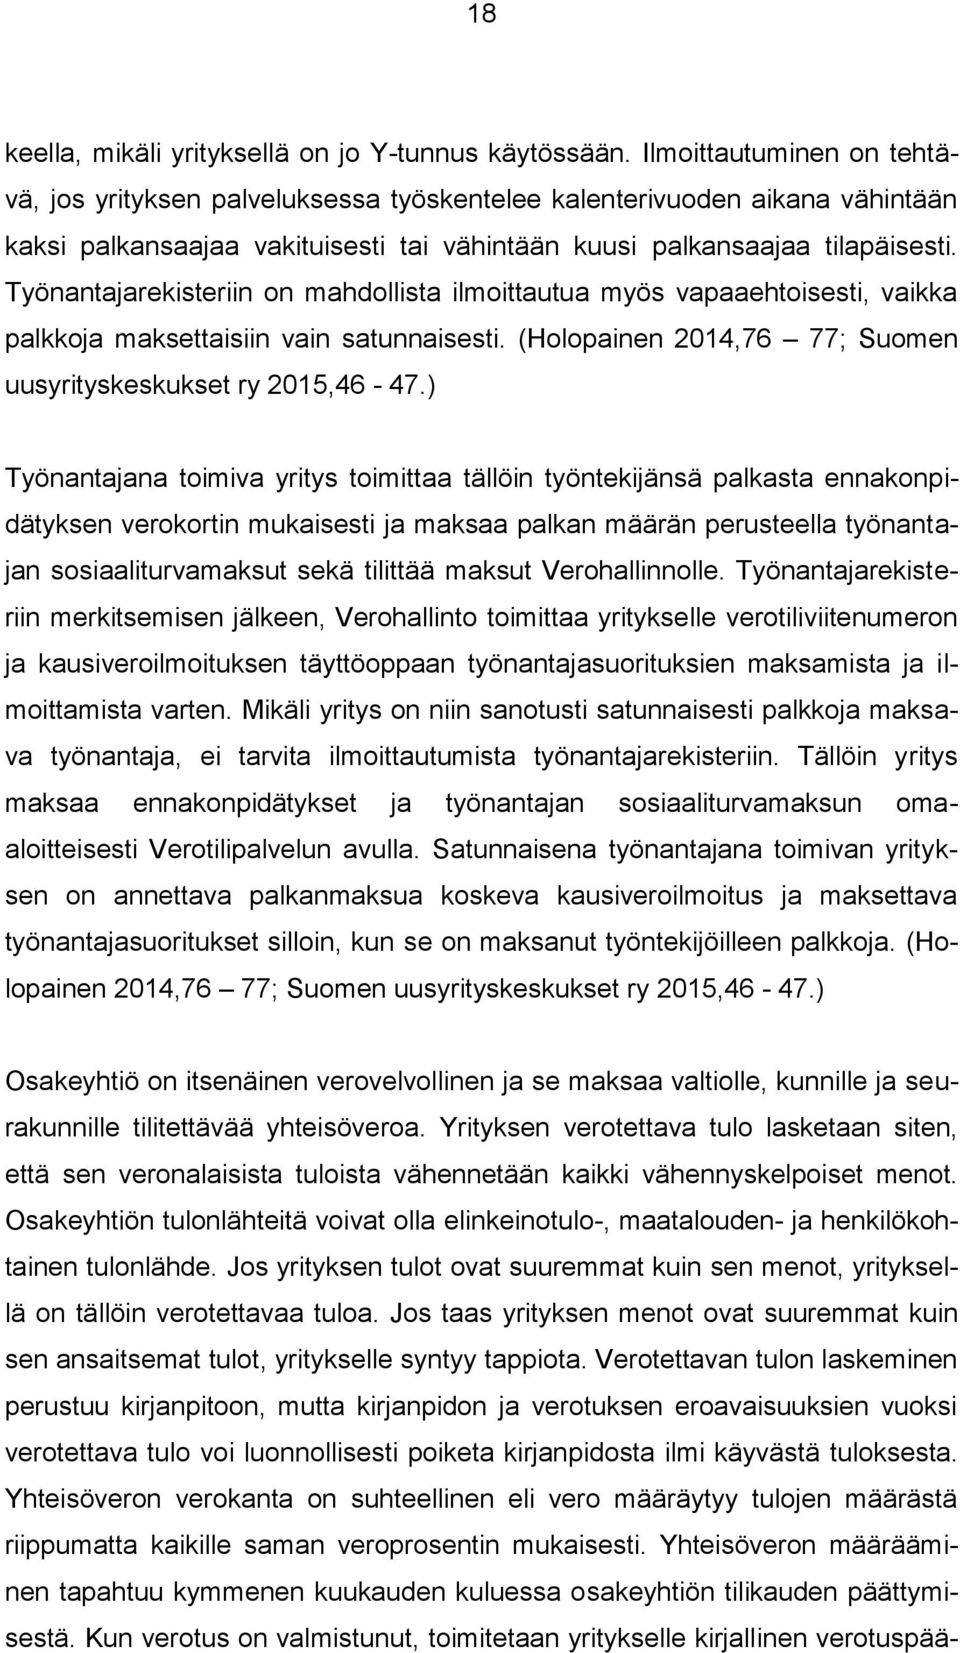 Työnantajarekisteriin n mahdllista ilmittautua myös vapaaehtisesti, vaikka palkkja maksettaisiin vain satunnaisesti. (Hlpainen 2014,76 77; Sumen uusyrityskeskukset ry 2015,46-47.